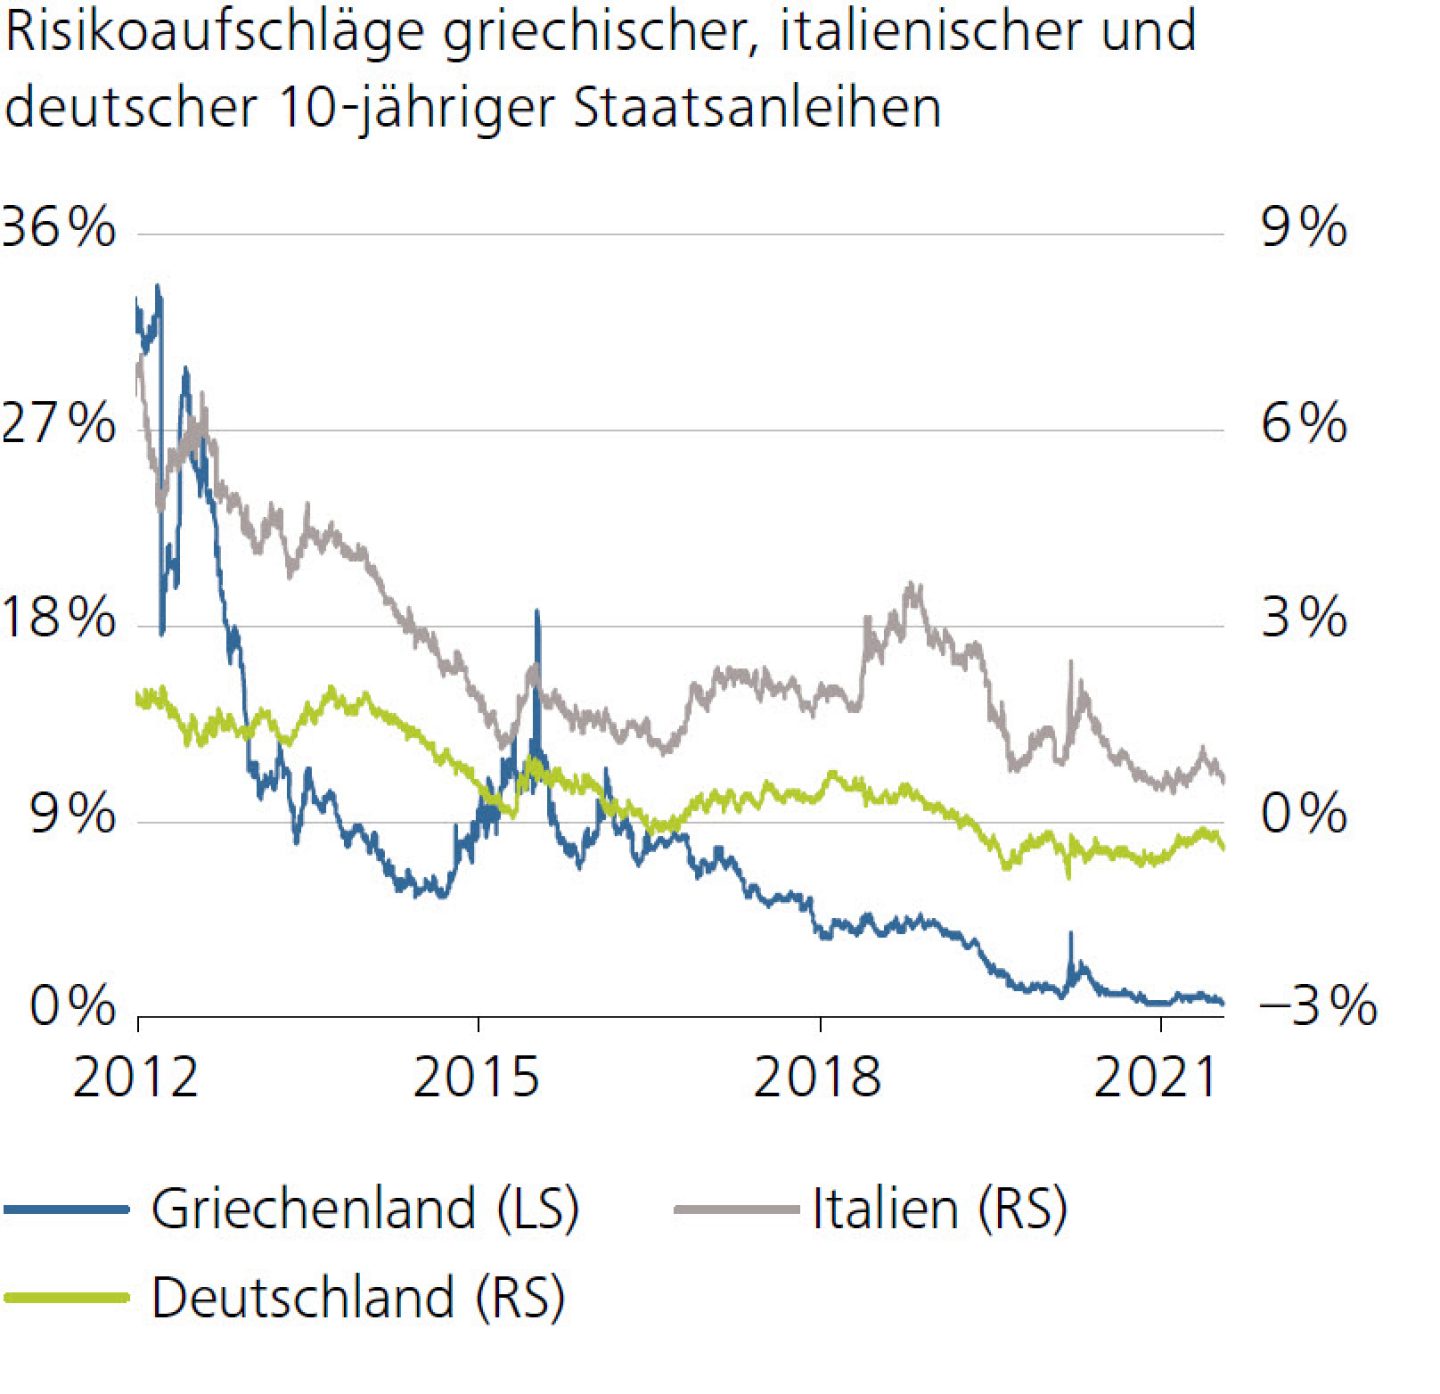 Risikoaufschläge griechischer, italienischer und deutscher 10-jähriger Staatsanleihen